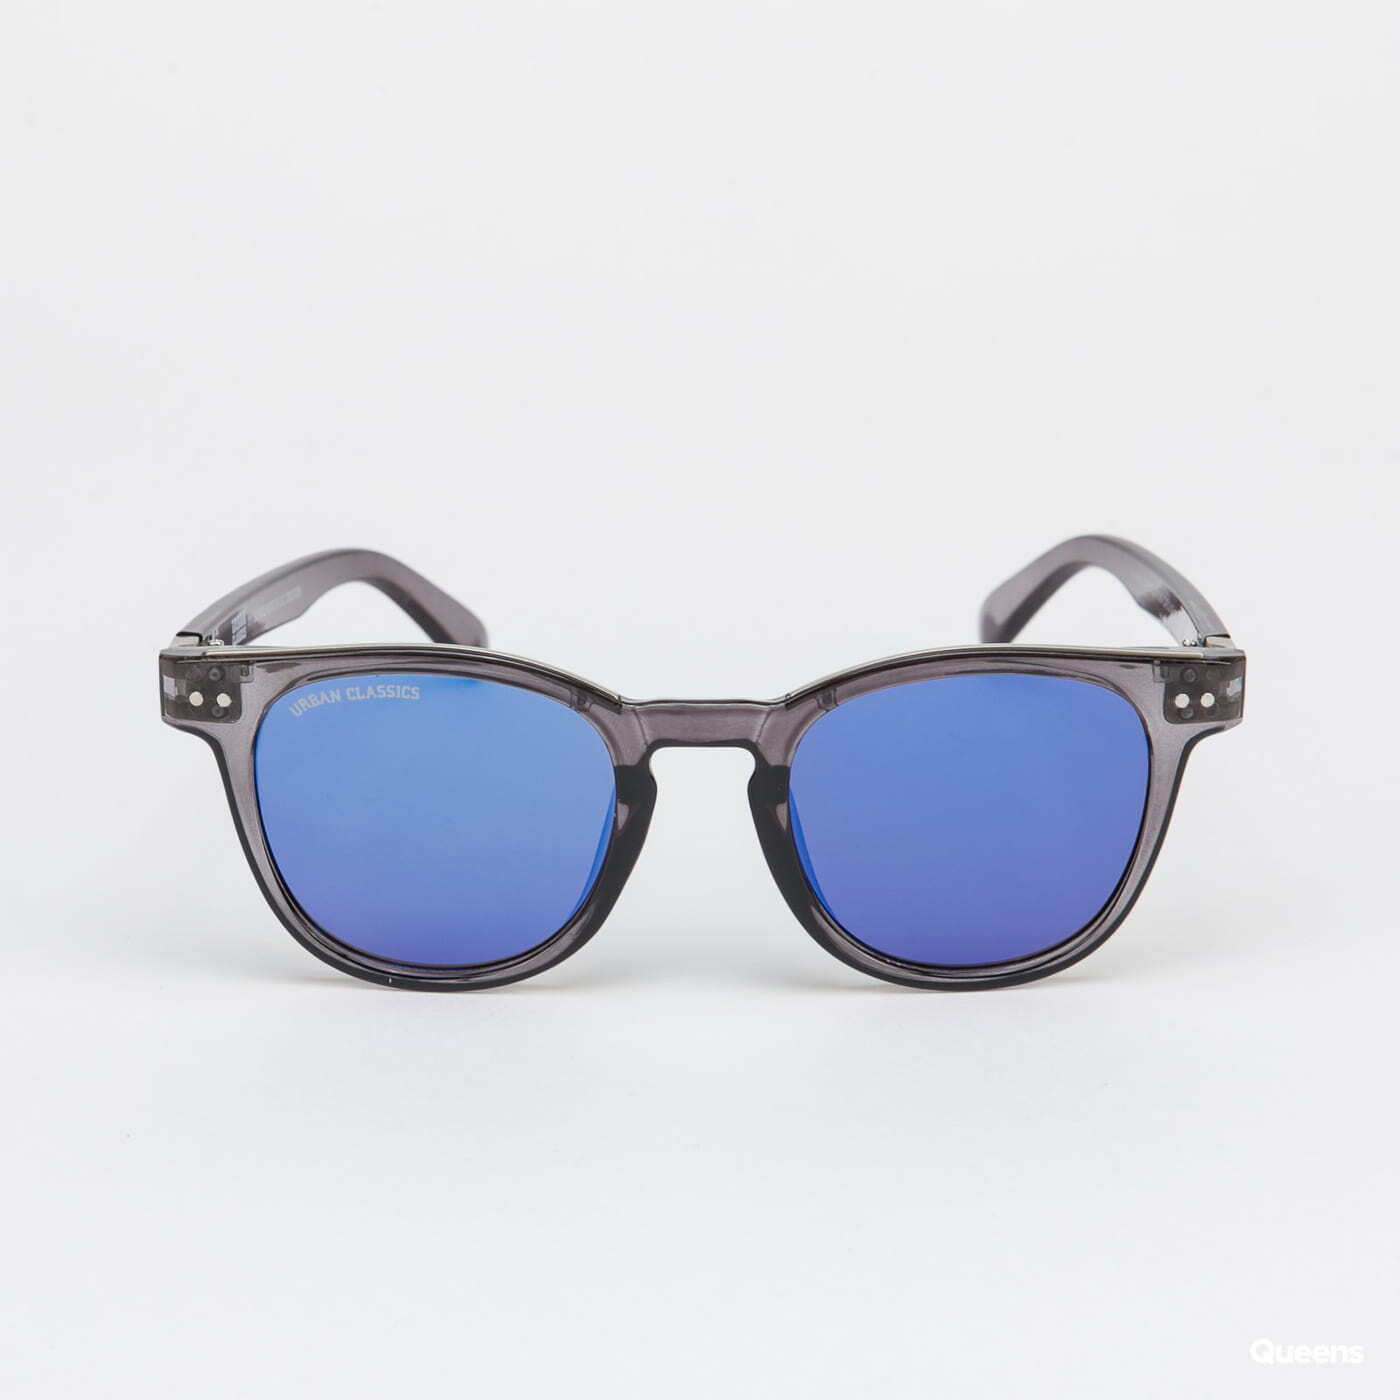 Sunglasses Urban Classics 111 Silver Queens Grey/ UC Sunglasses 